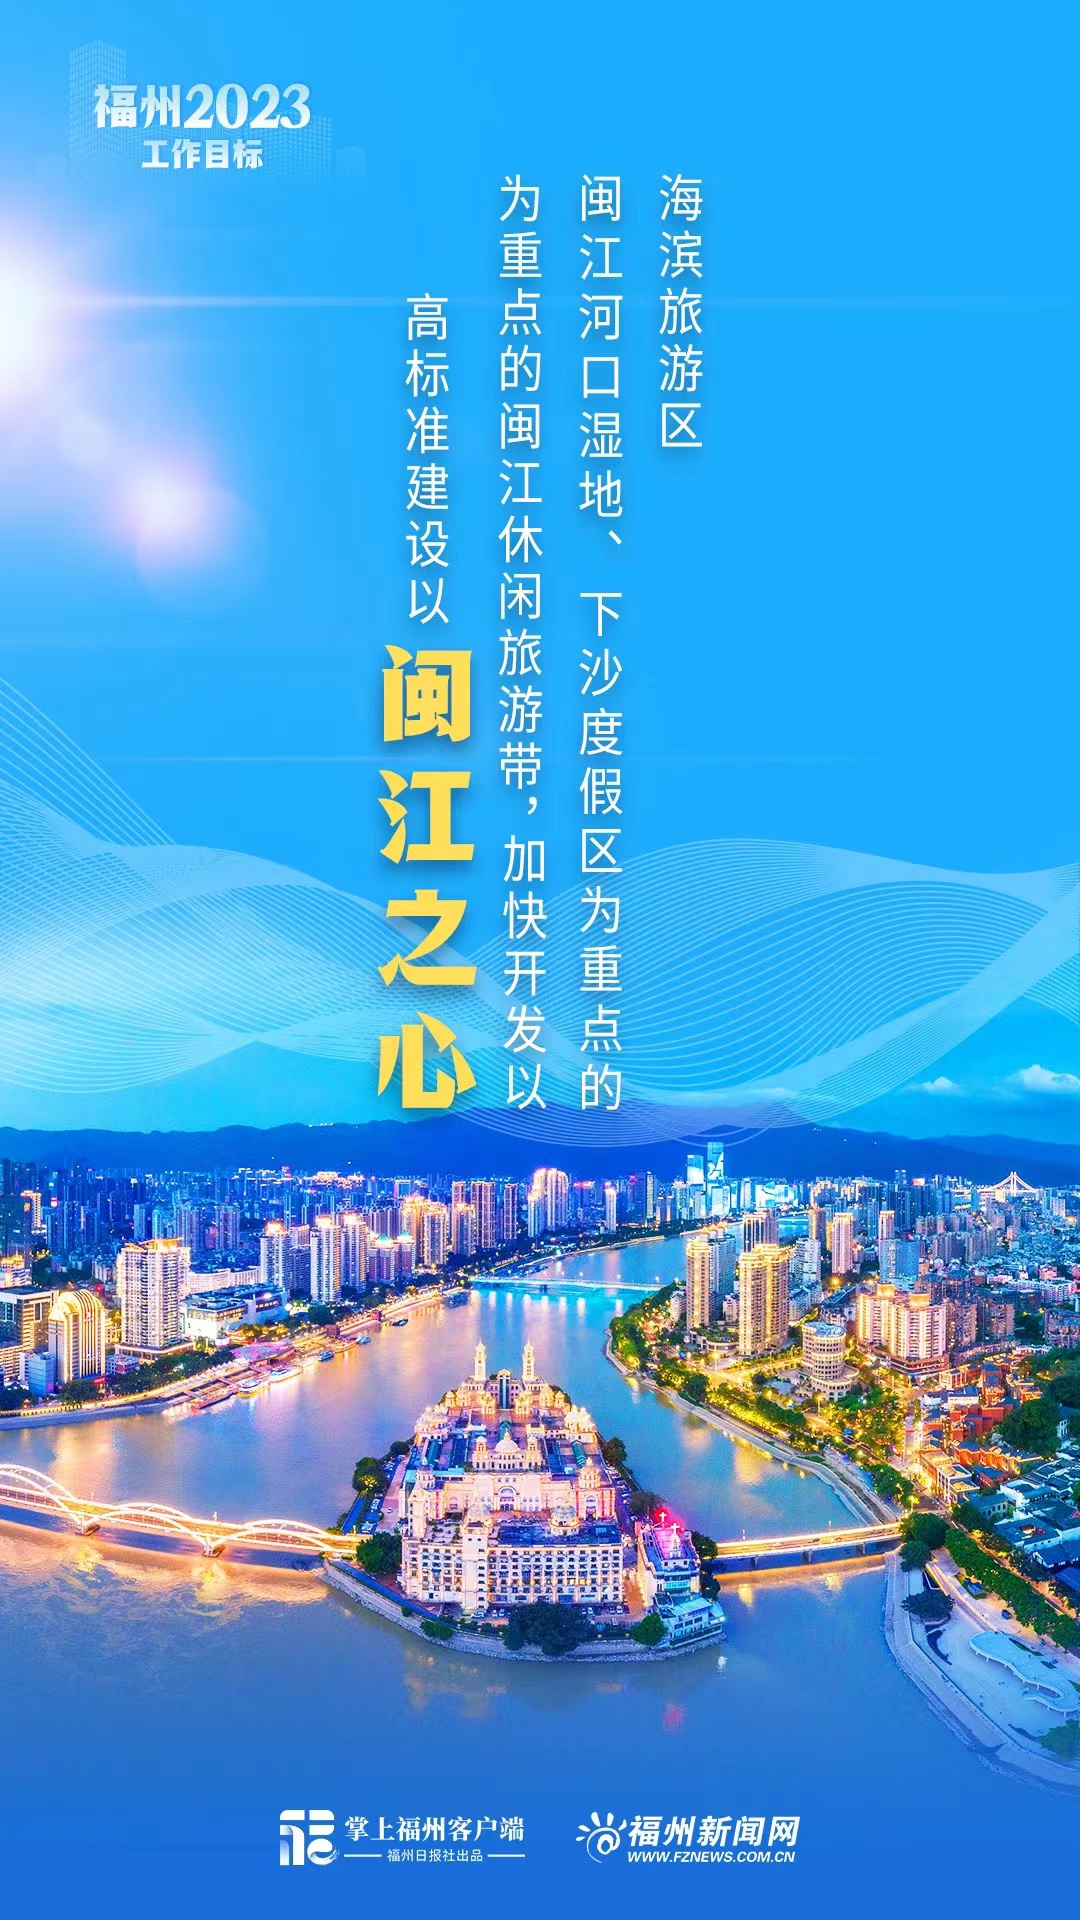 6张海报带你看懂福州2023工作目标